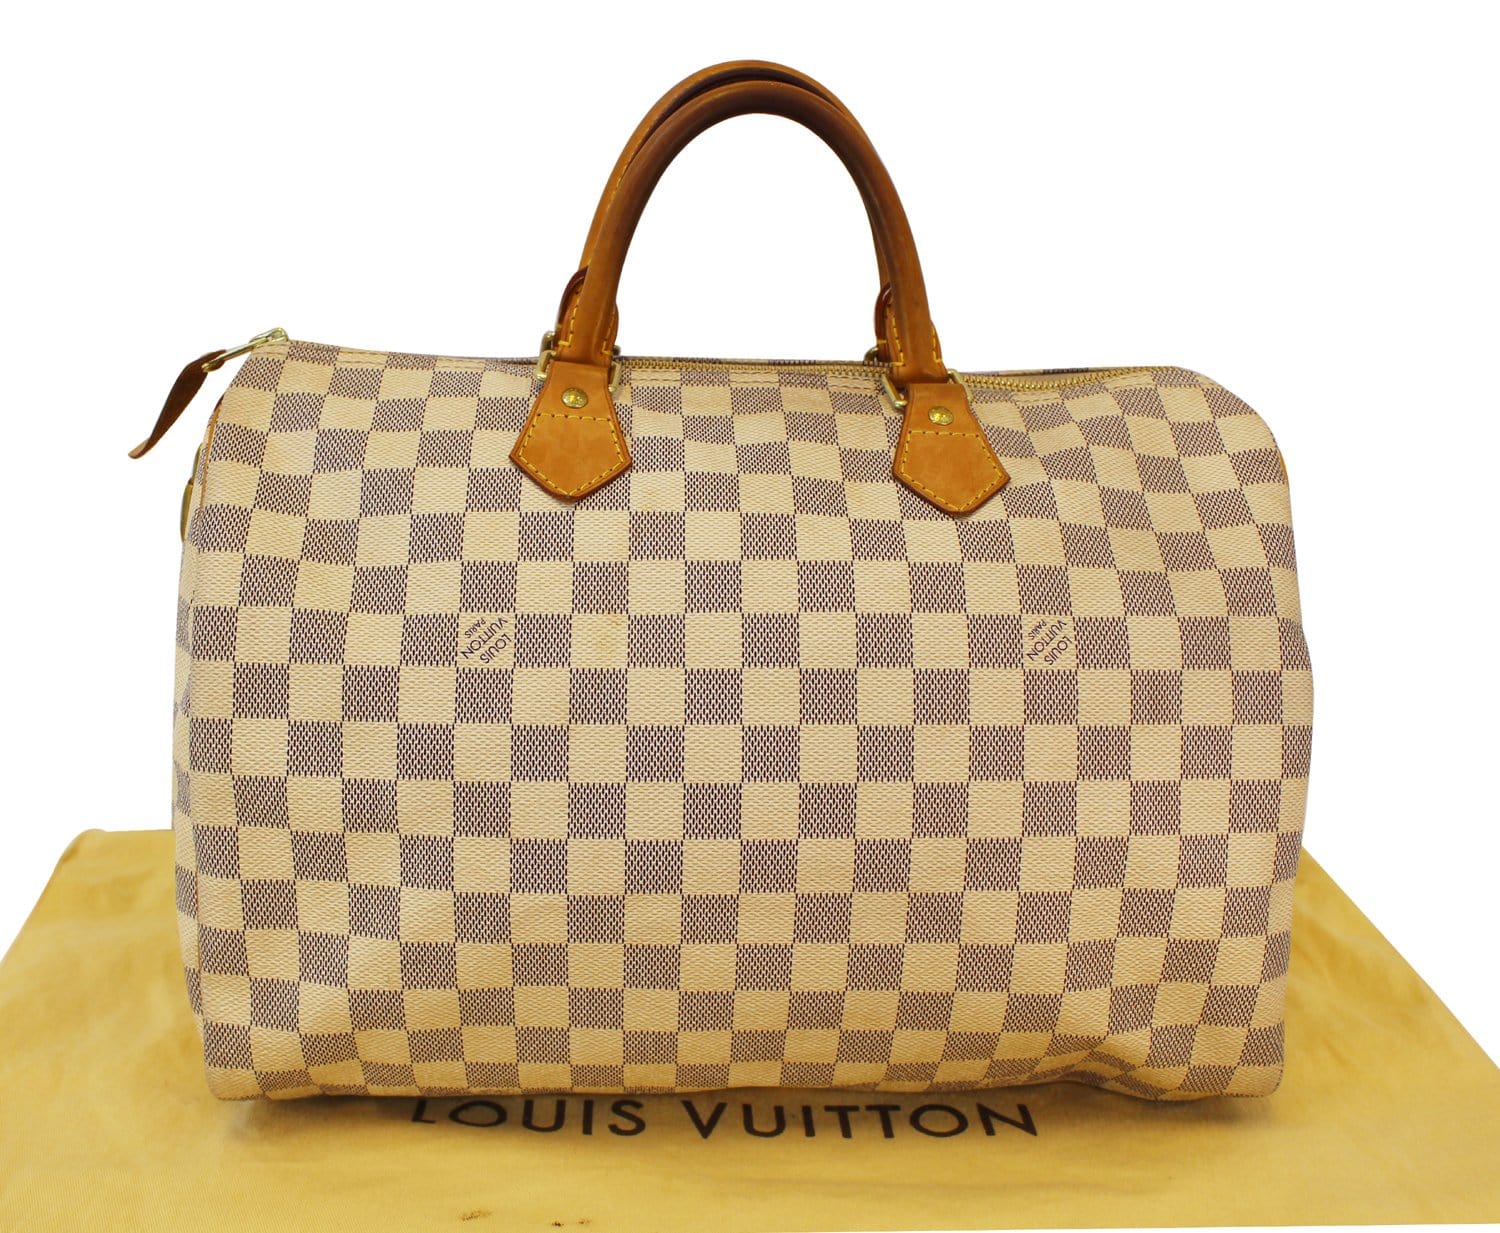 Louis Vuitton Azur Speedy 35 Satchel - A World Of Goods For You, LLC